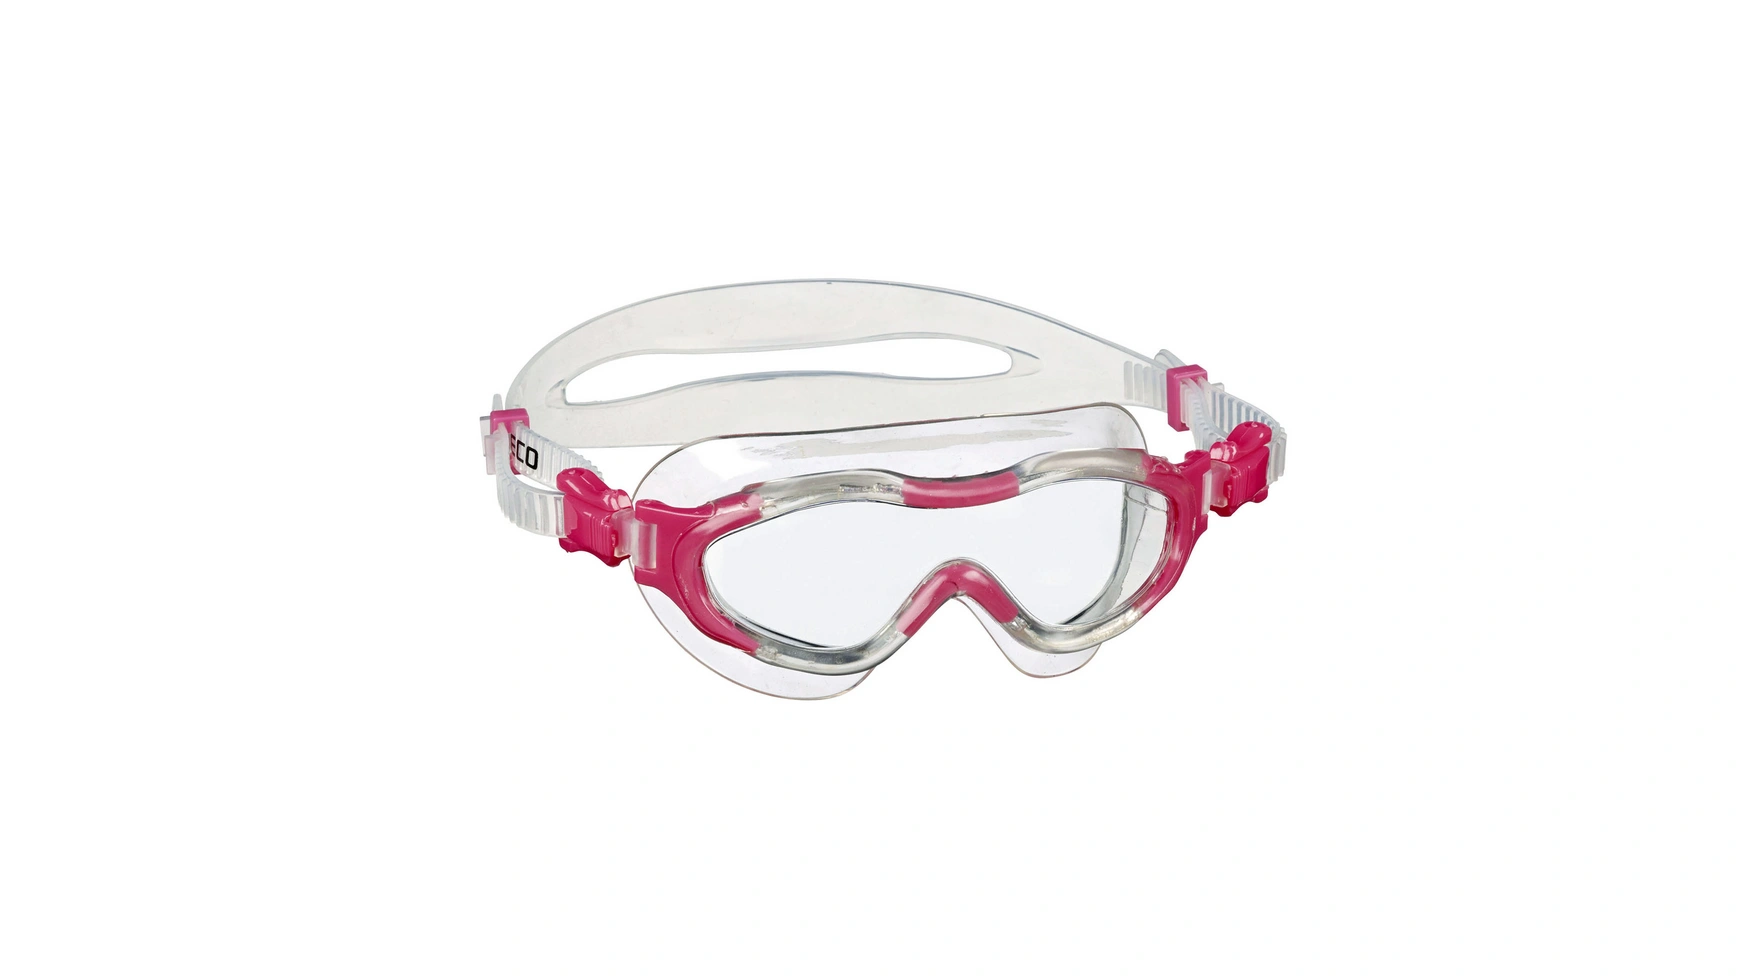 Beco Alicante 4+ Мягкие панорамные очки для детей от 4 лет и старше очки для плавания для взрослых для близорукости водонепроницаемые с ушками для плавания по рецепту незапотевающие очки для дайвинга